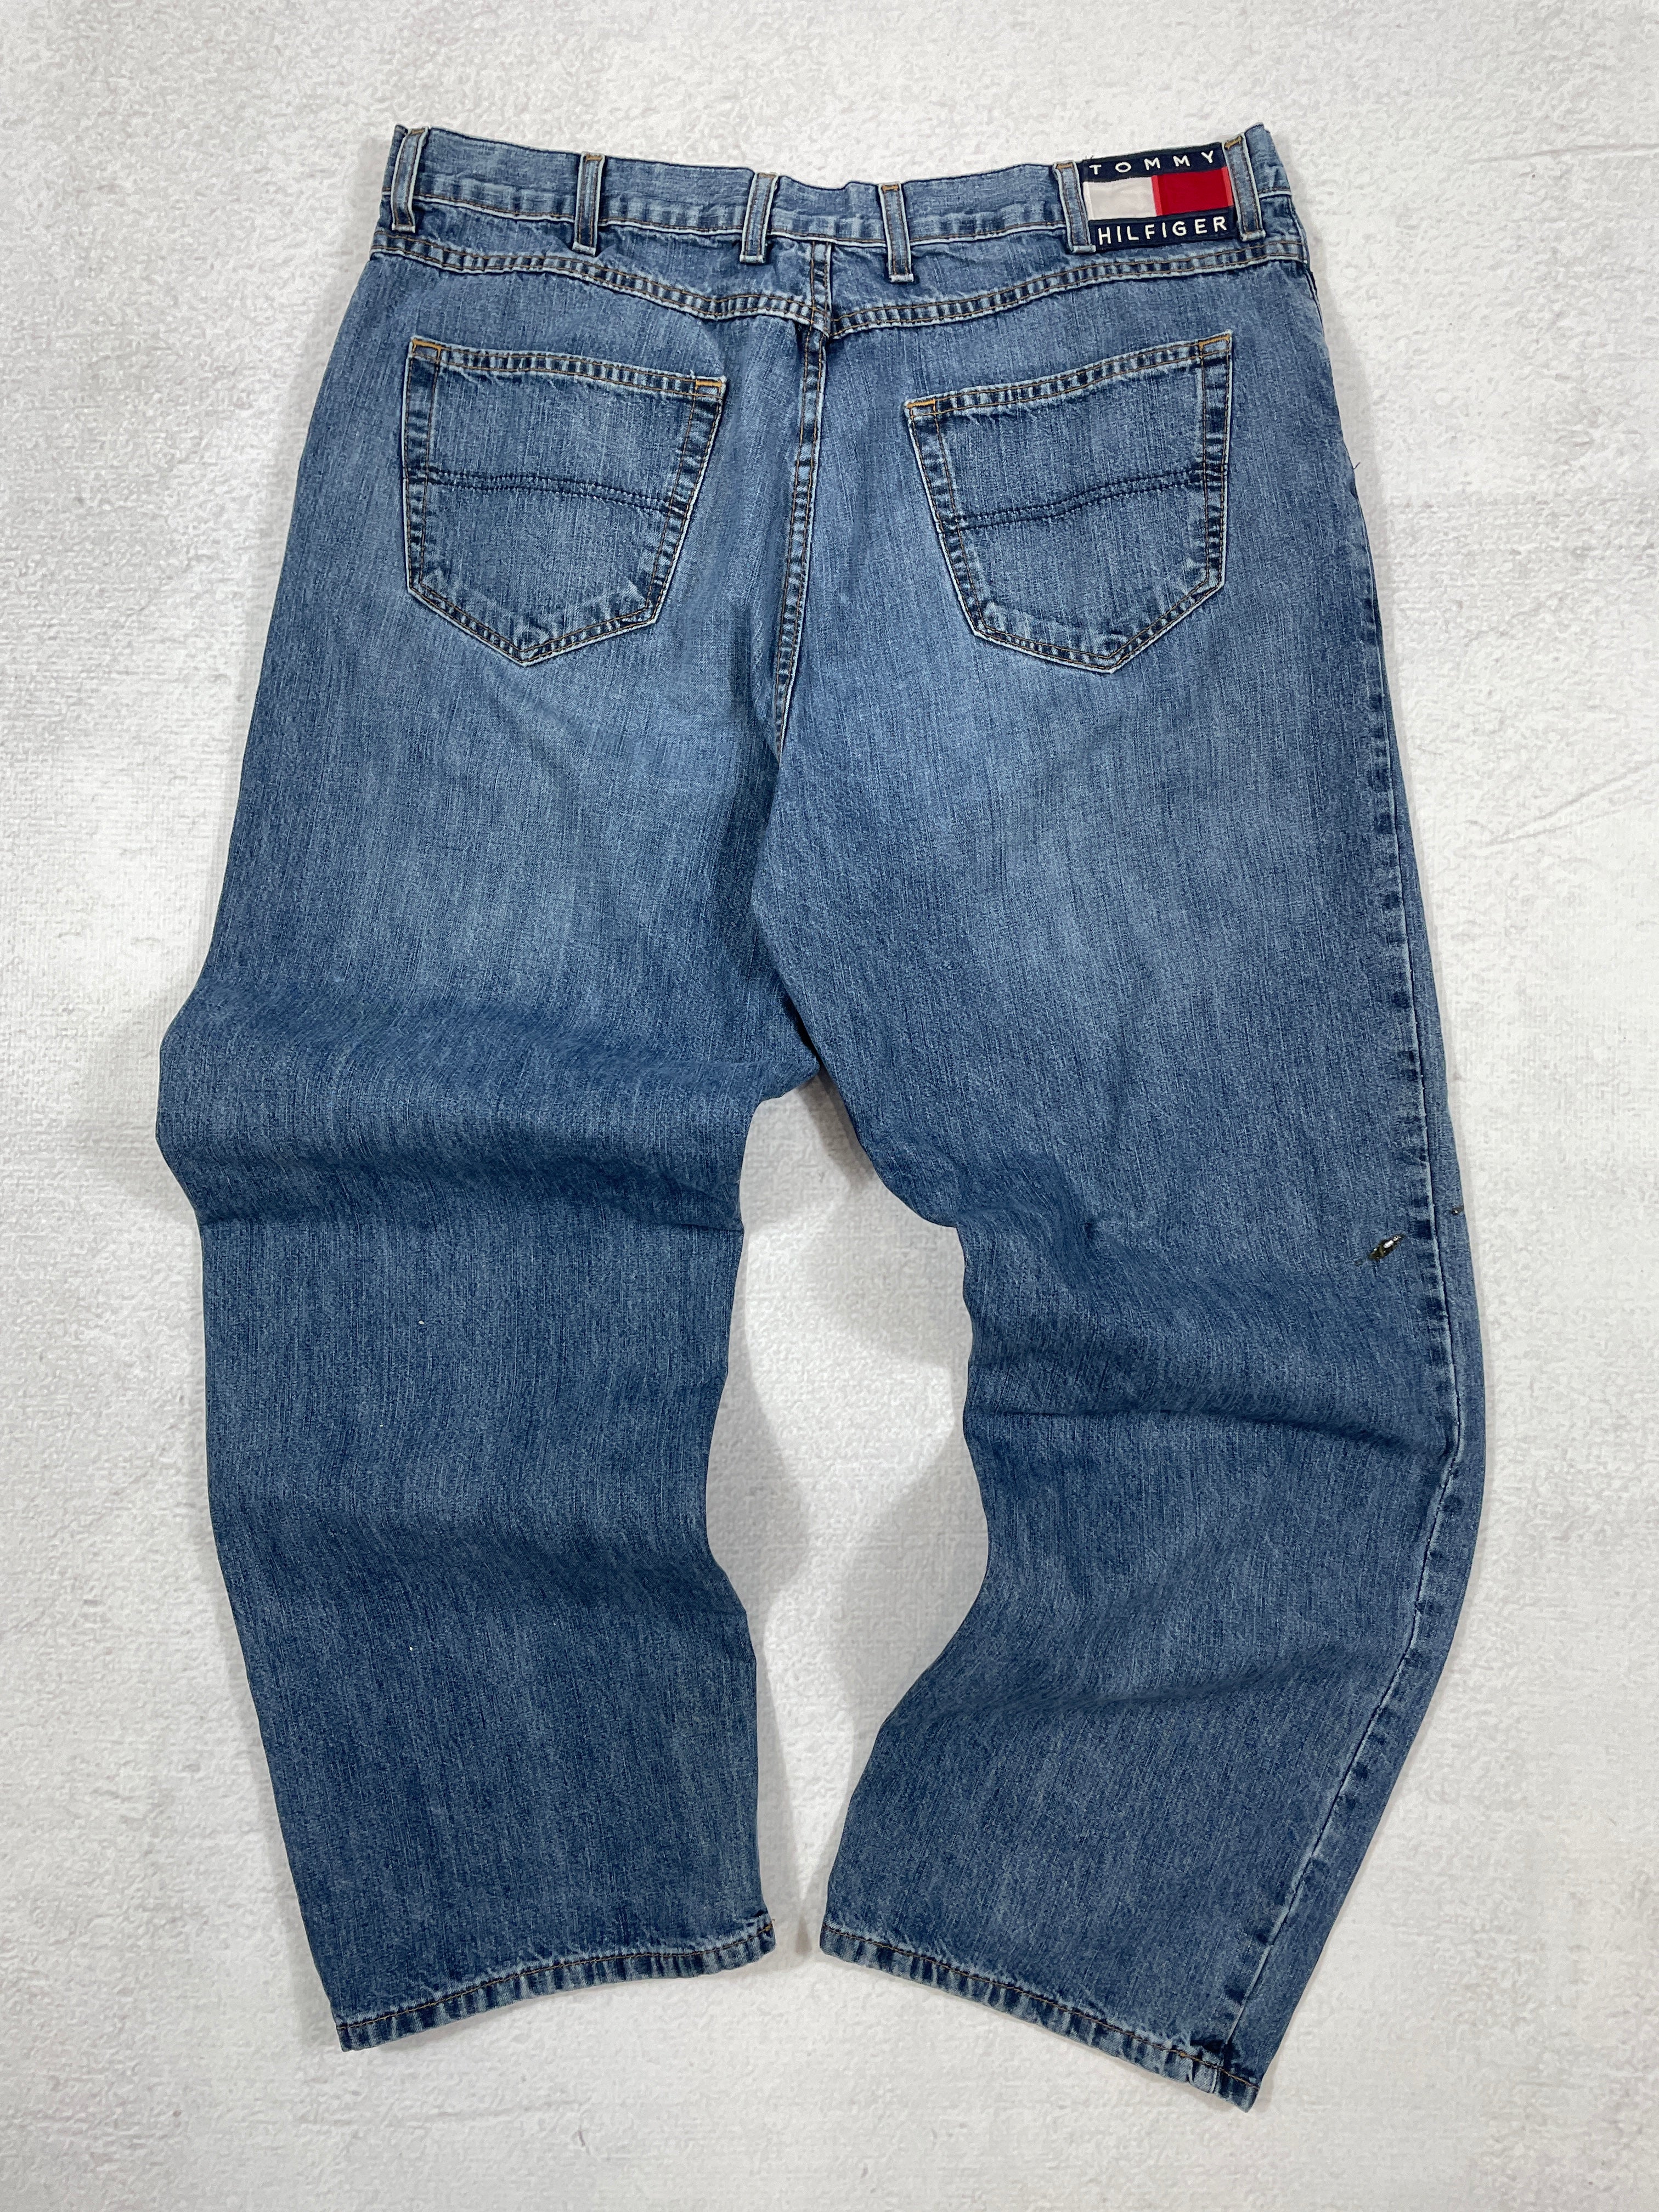 Vintage Tommy Hilfiger Baggy Jeans - Men's 38Wx30L